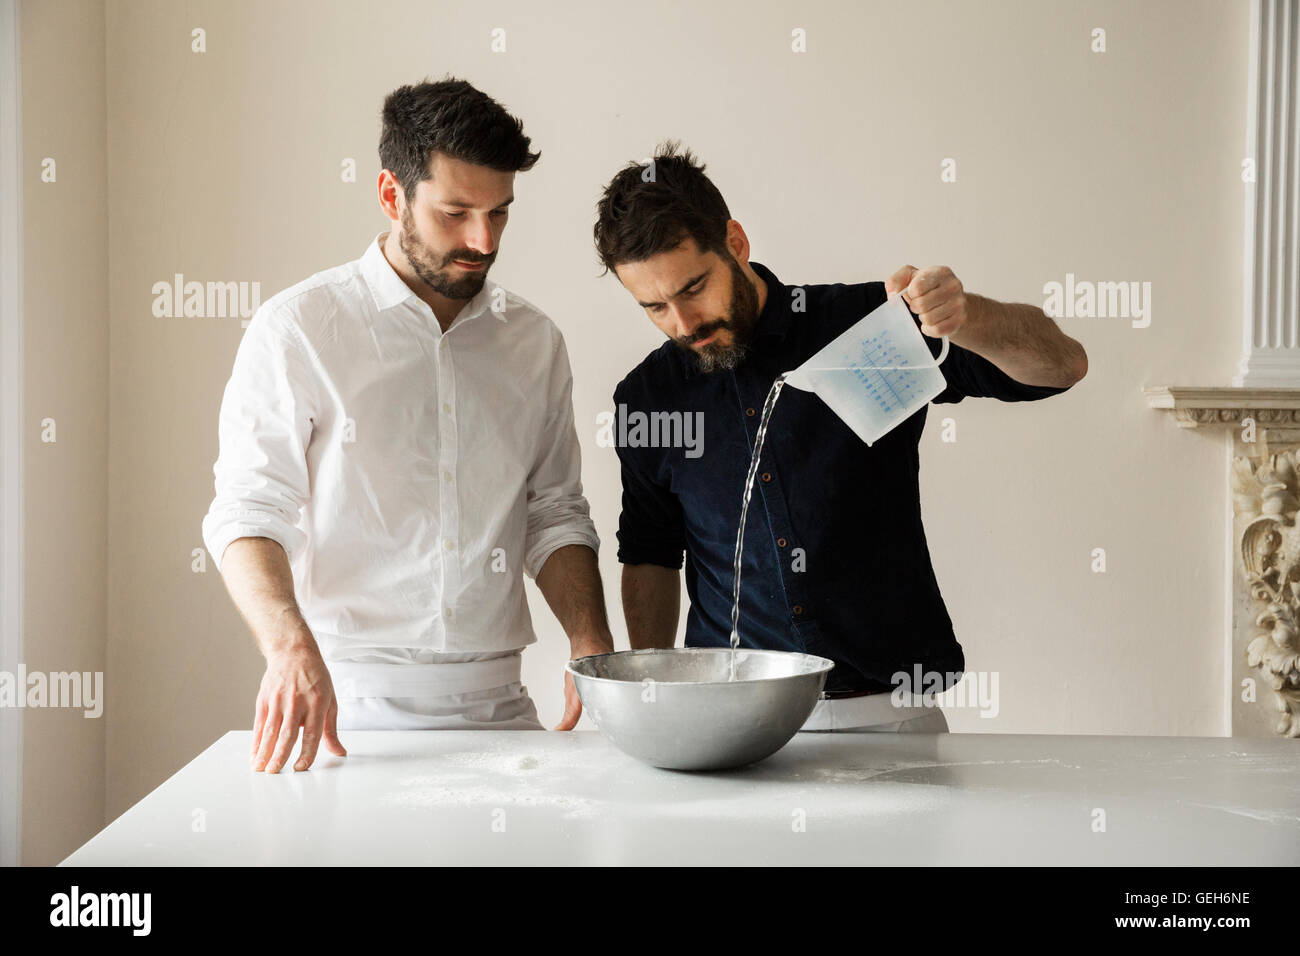 Deux boulangers debout à une table, la préparation de pâte à pain, verser de l'eau à partir d'une éprouvette graduée dans un bol en métal. Banque D'Images